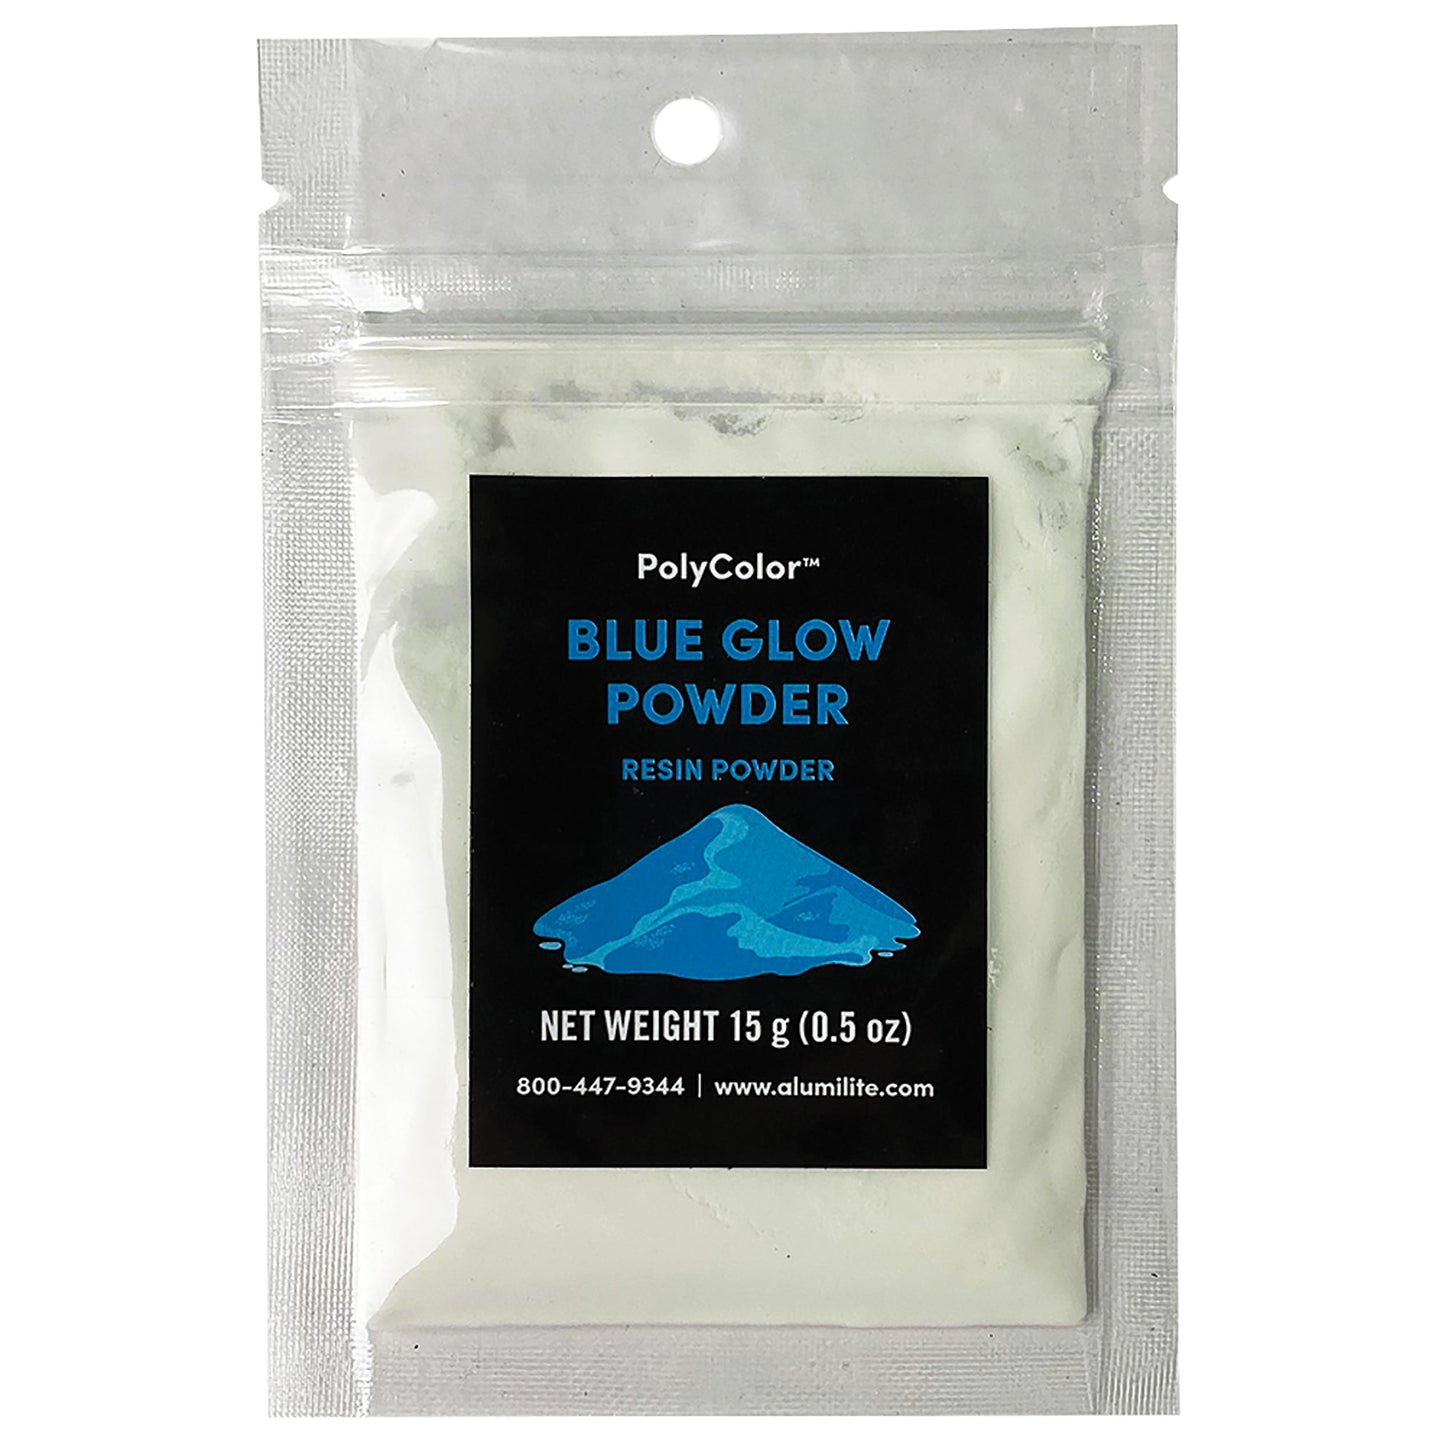 Alumilite PolyColor Resin Powder Blue Glow 15g alt 1